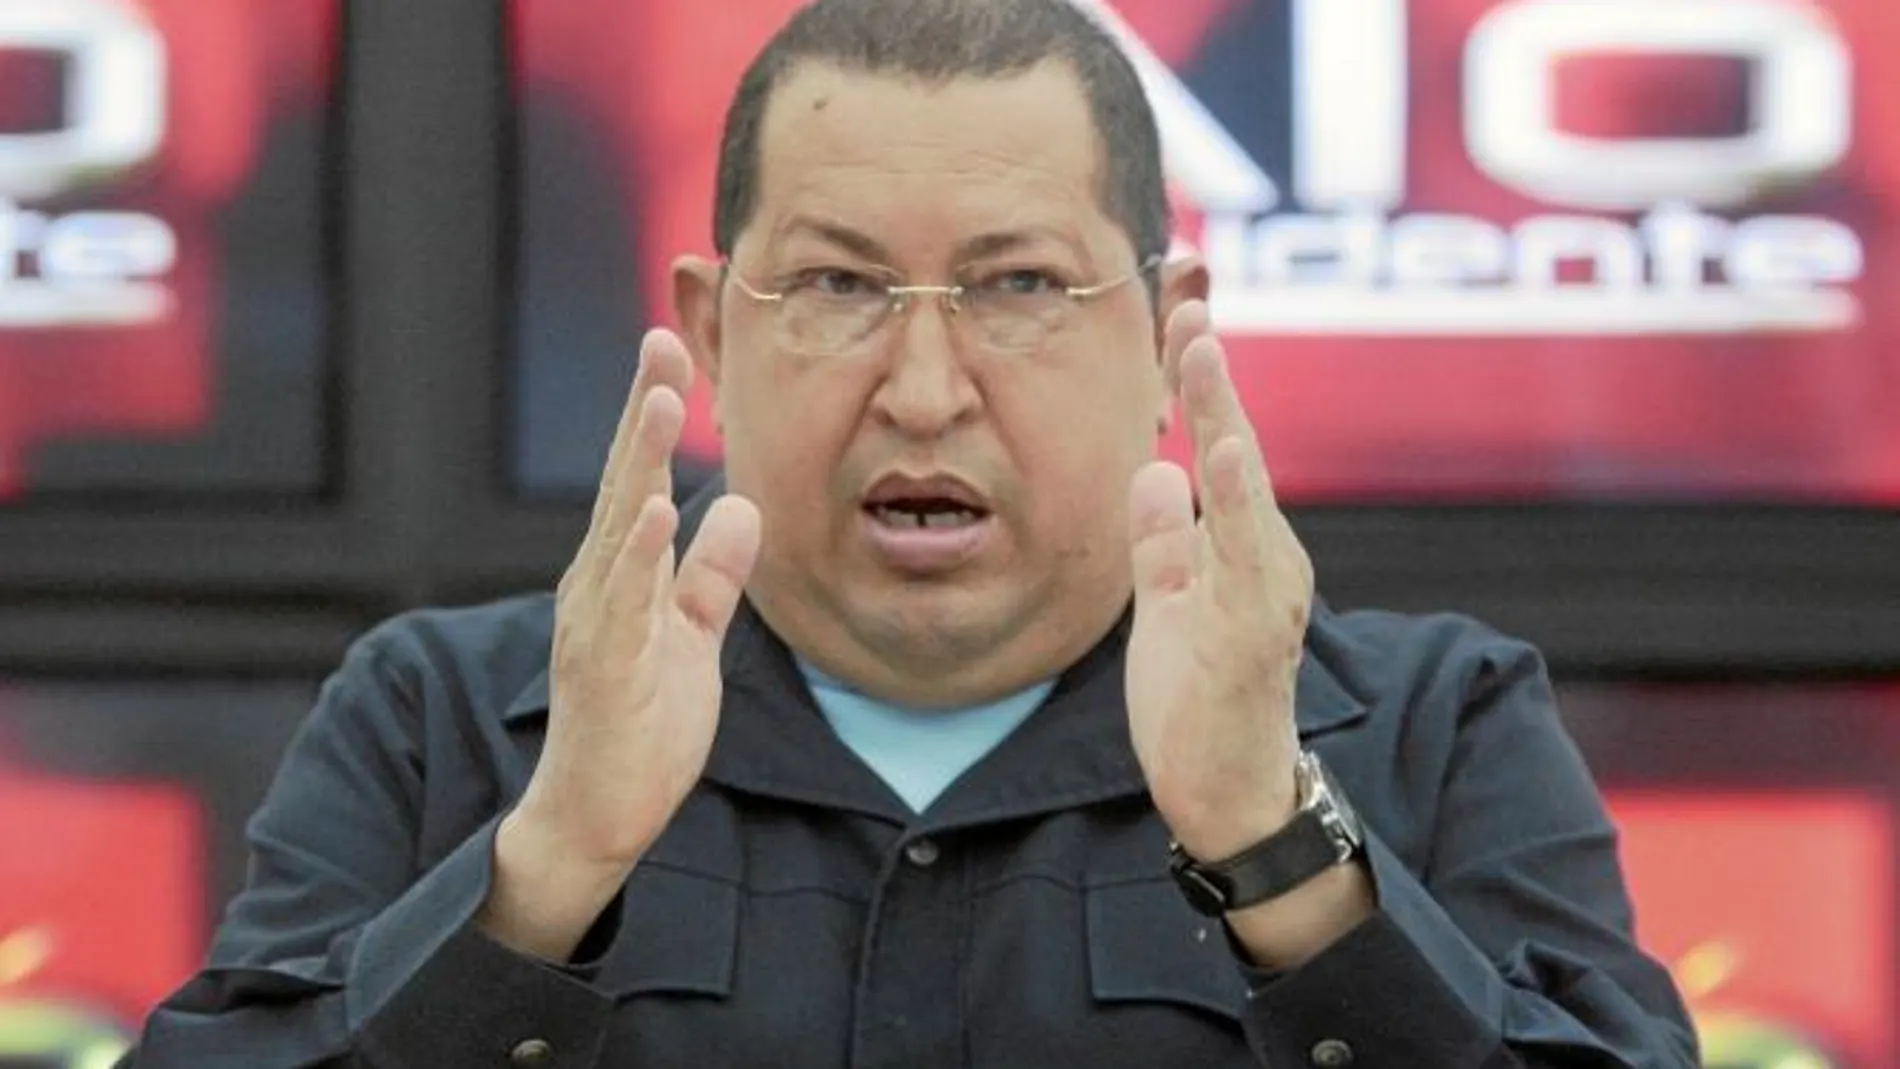 El régimen se ríe de los rumores sobre la salud de Chávez